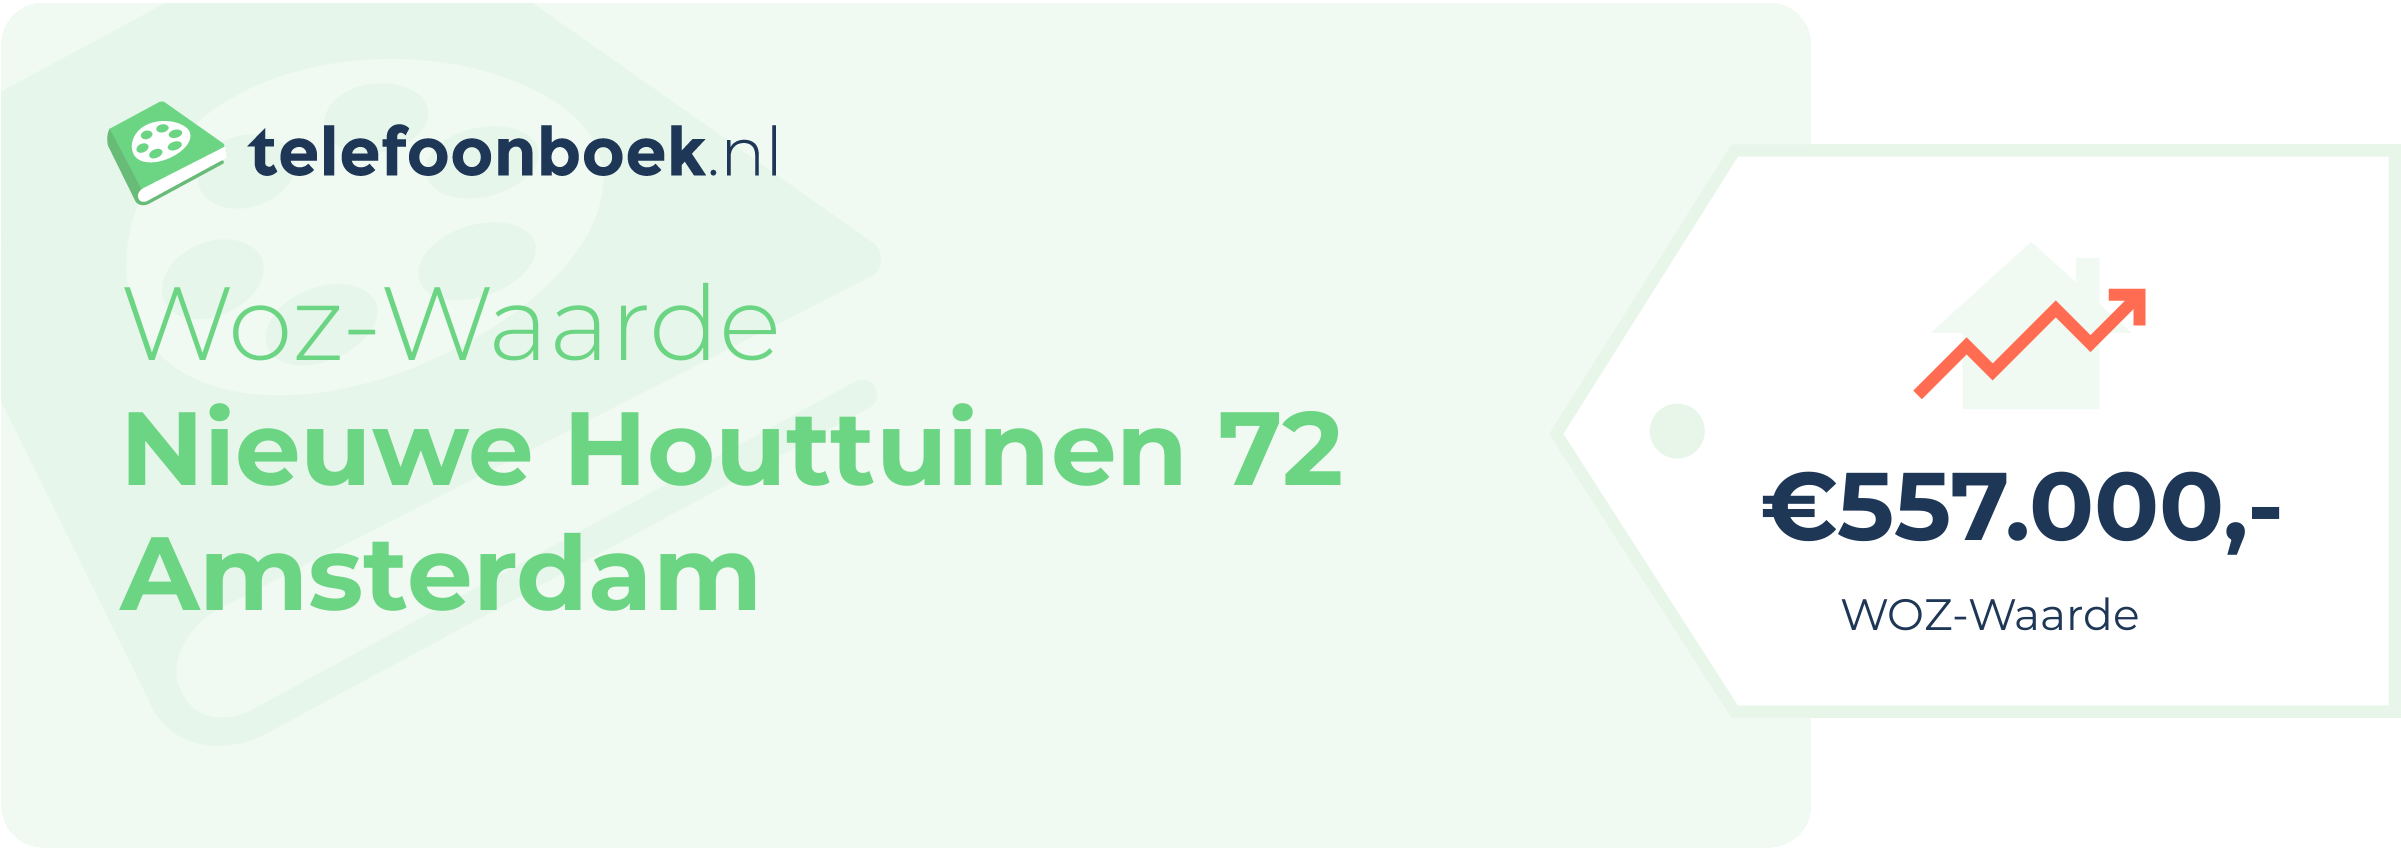 WOZ-waarde Nieuwe Houttuinen 72 Amsterdam